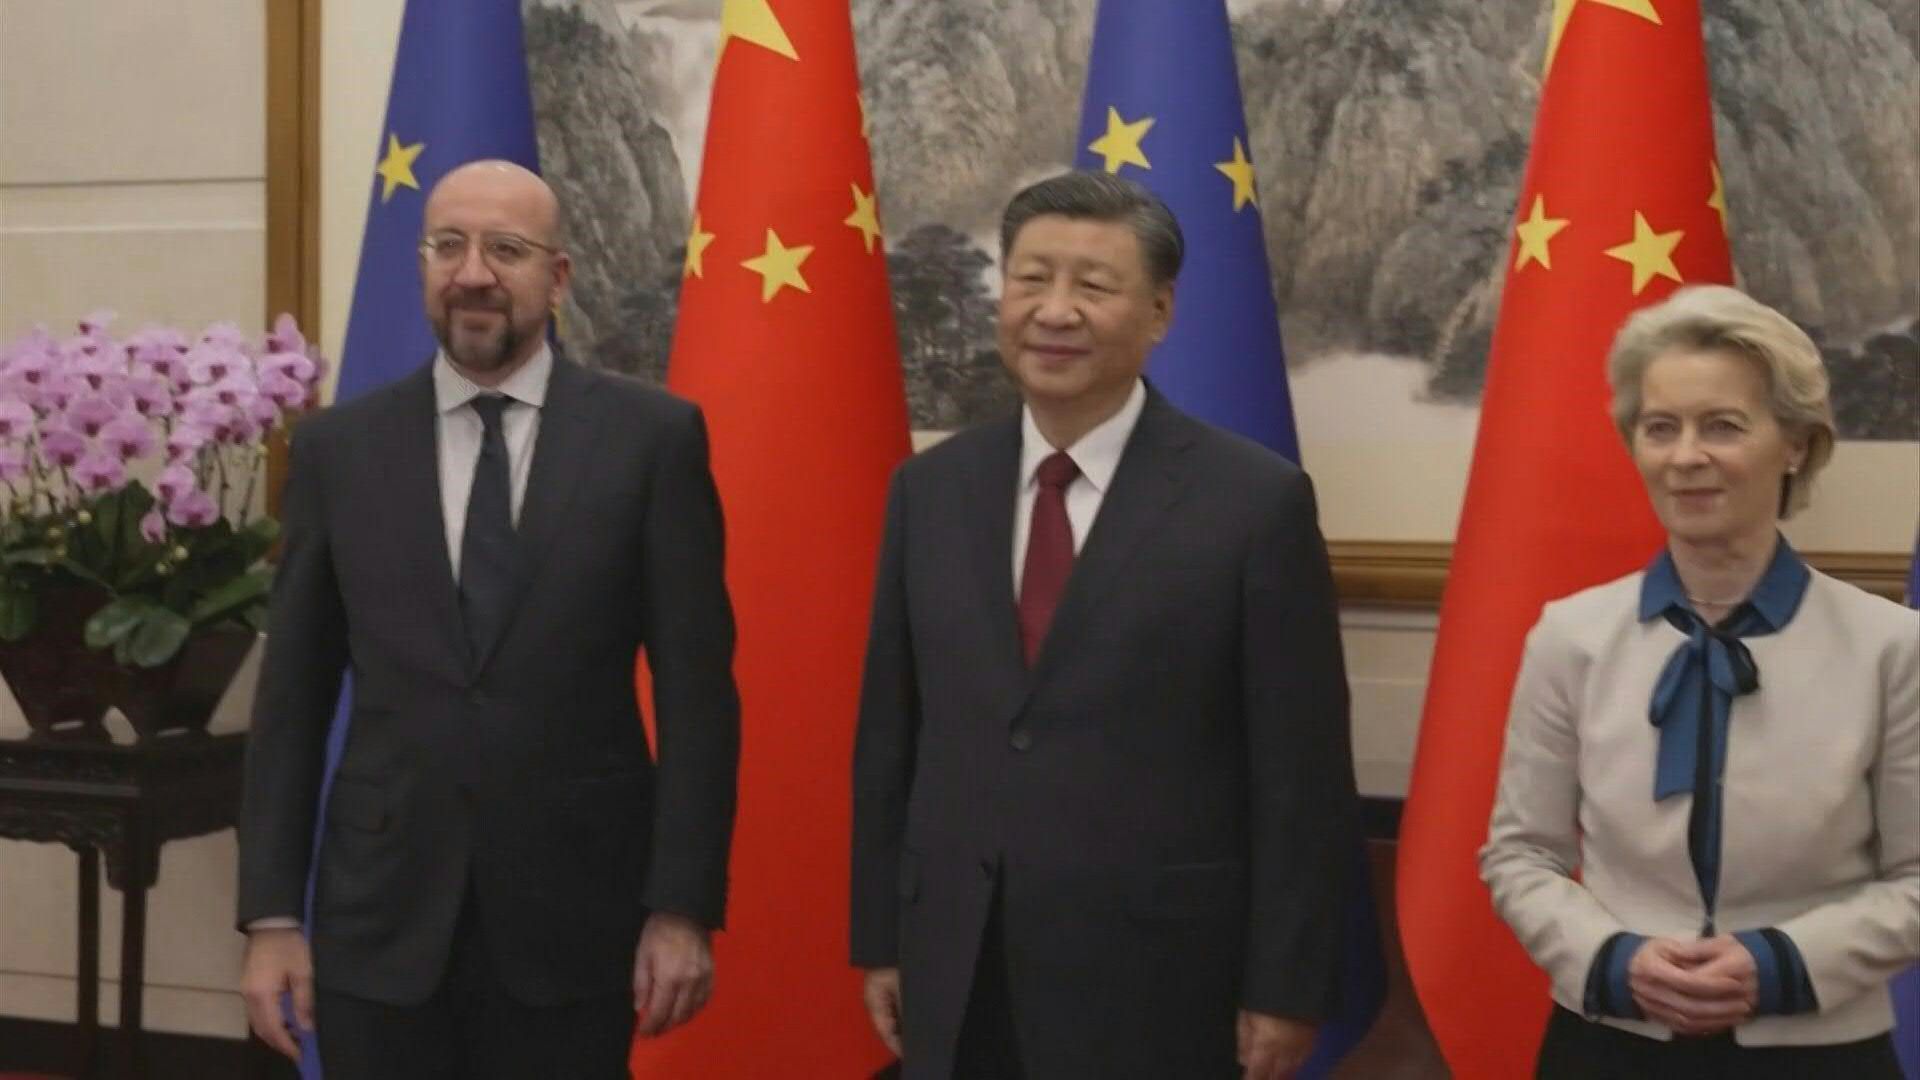 EU-China-Gipfel: Von der Leyen will "Ungleichgewichte" ansprechen